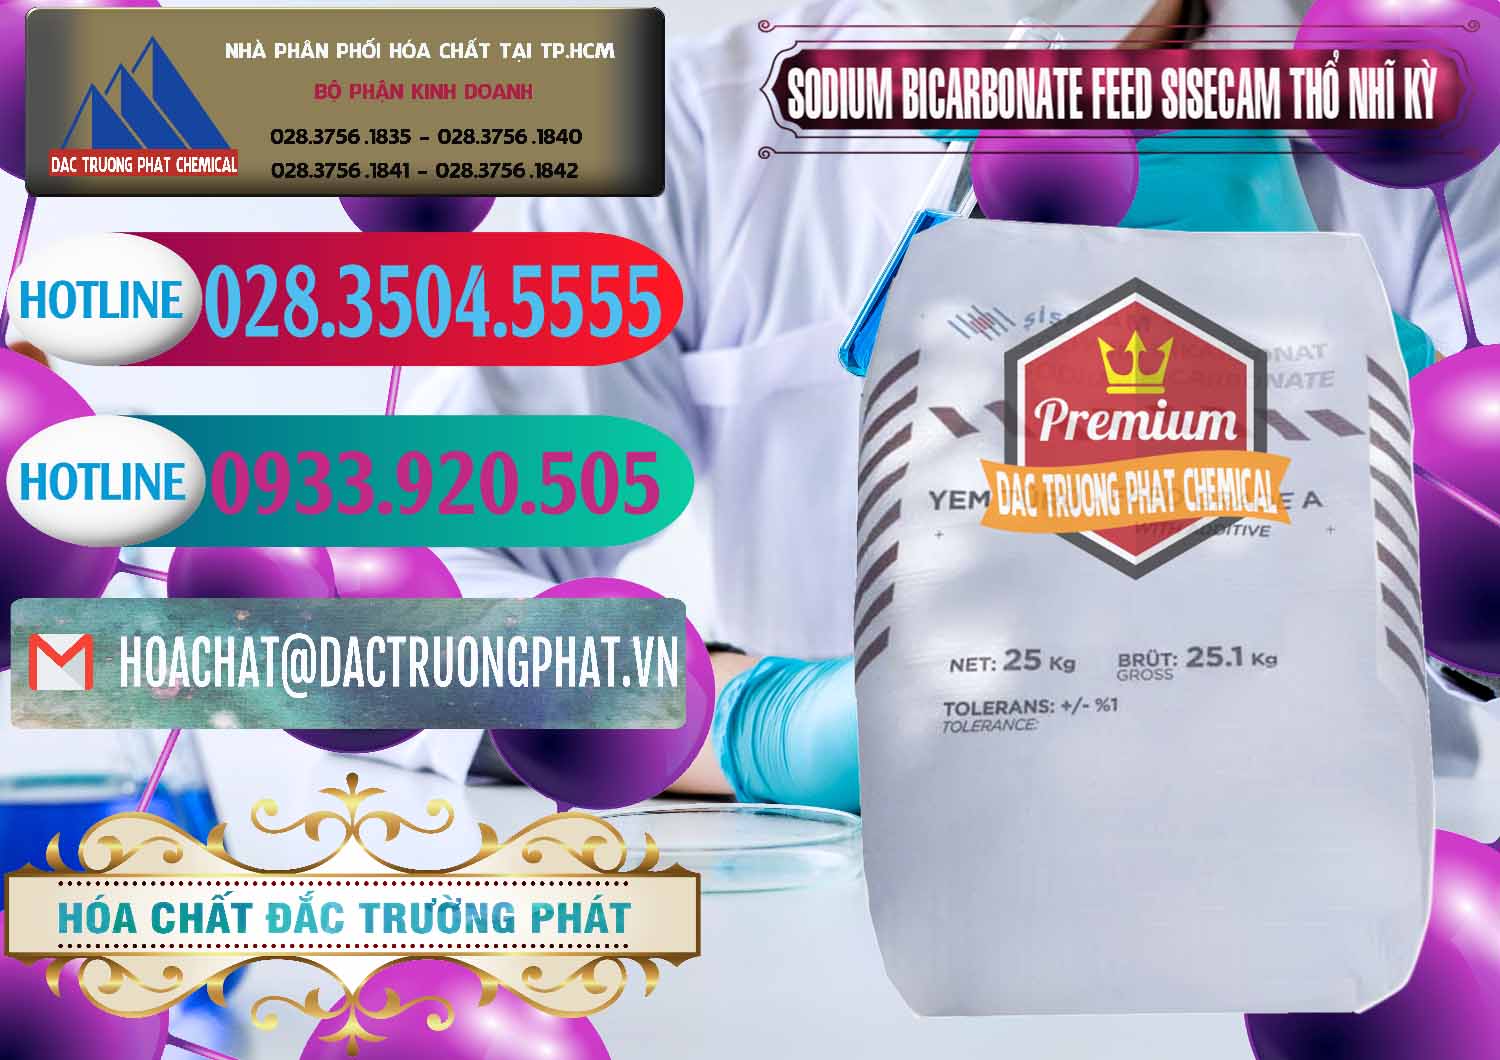 Cty bán và cung cấp Sodium Bicarbonate – Bicar NaHCO3 Feed Grade Thổ Nhĩ Kỳ Turkey - 0265 - Nơi chuyên kinh doanh và cung cấp hóa chất tại TP.HCM - truongphat.vn